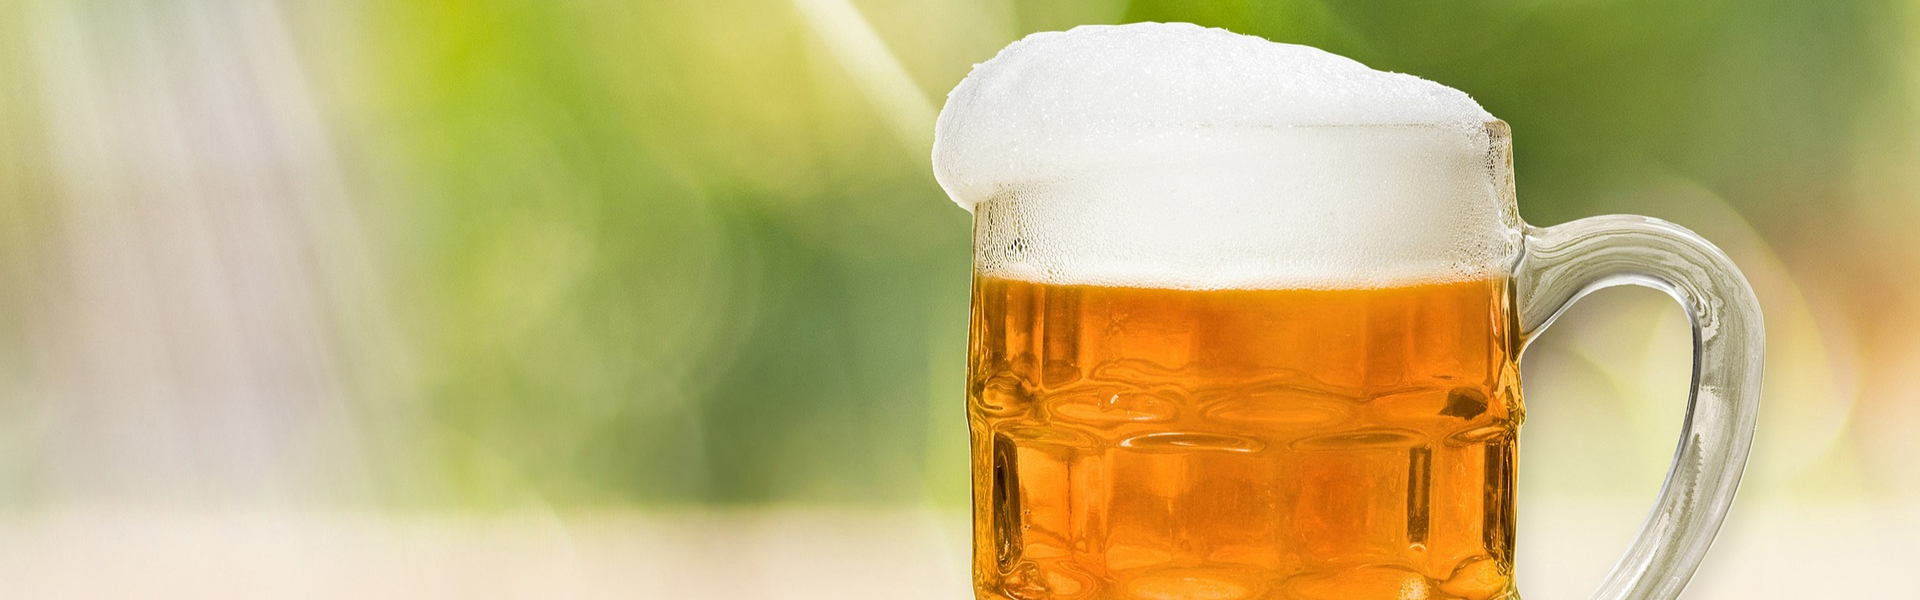 Dia da Cerveja – setor teve crescimento de 14,4% no último ano